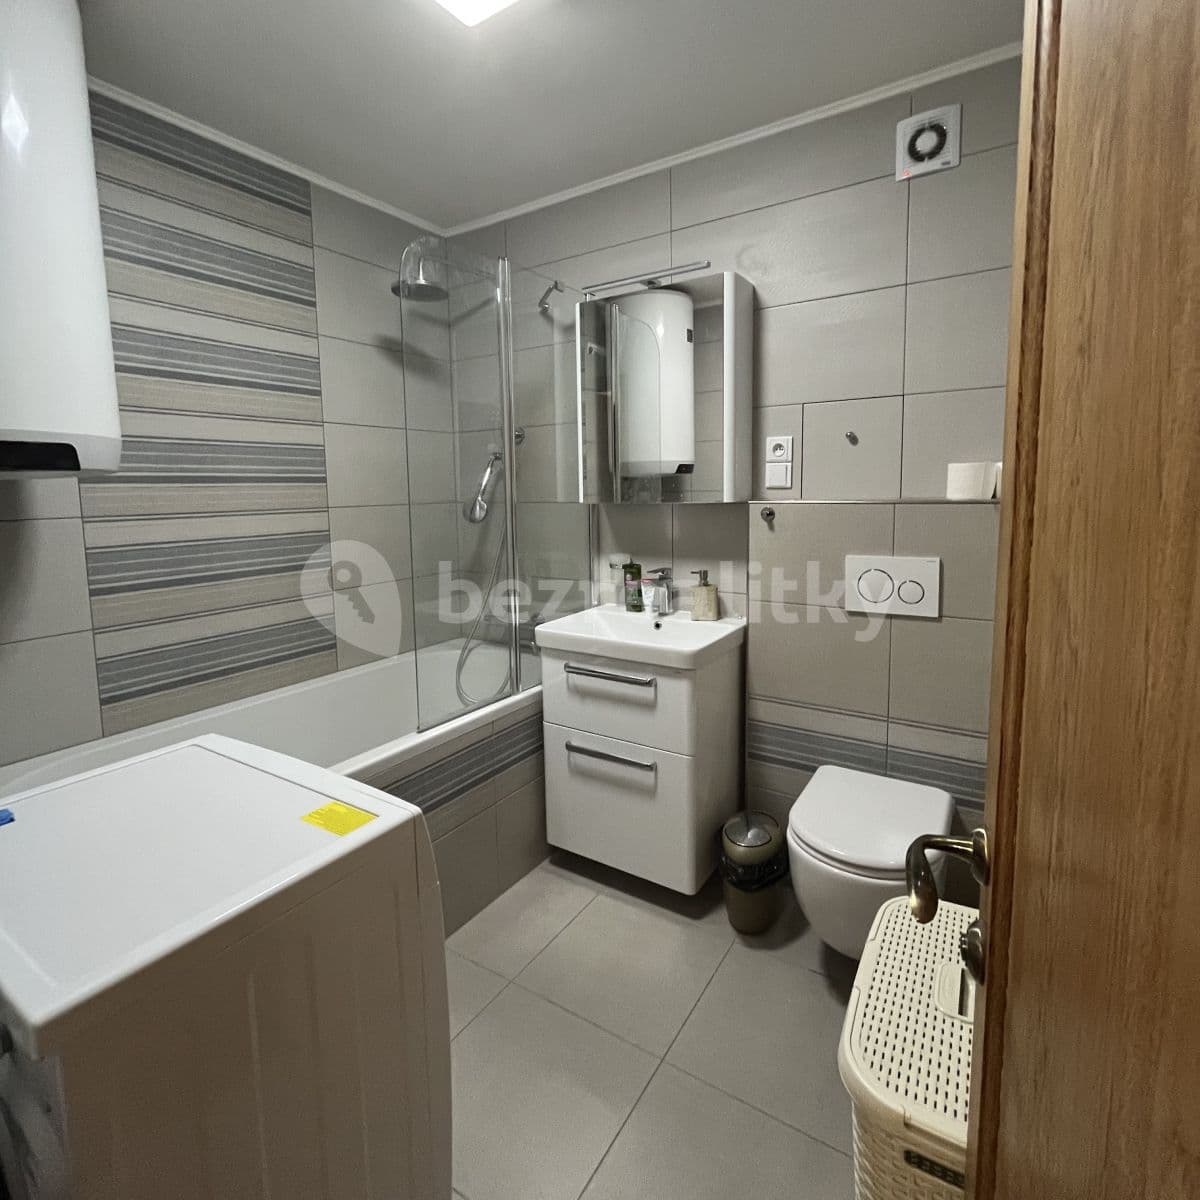 3 bedroom flat to rent, 70 m², K Sídlišti, Klecany, Středočeský Region